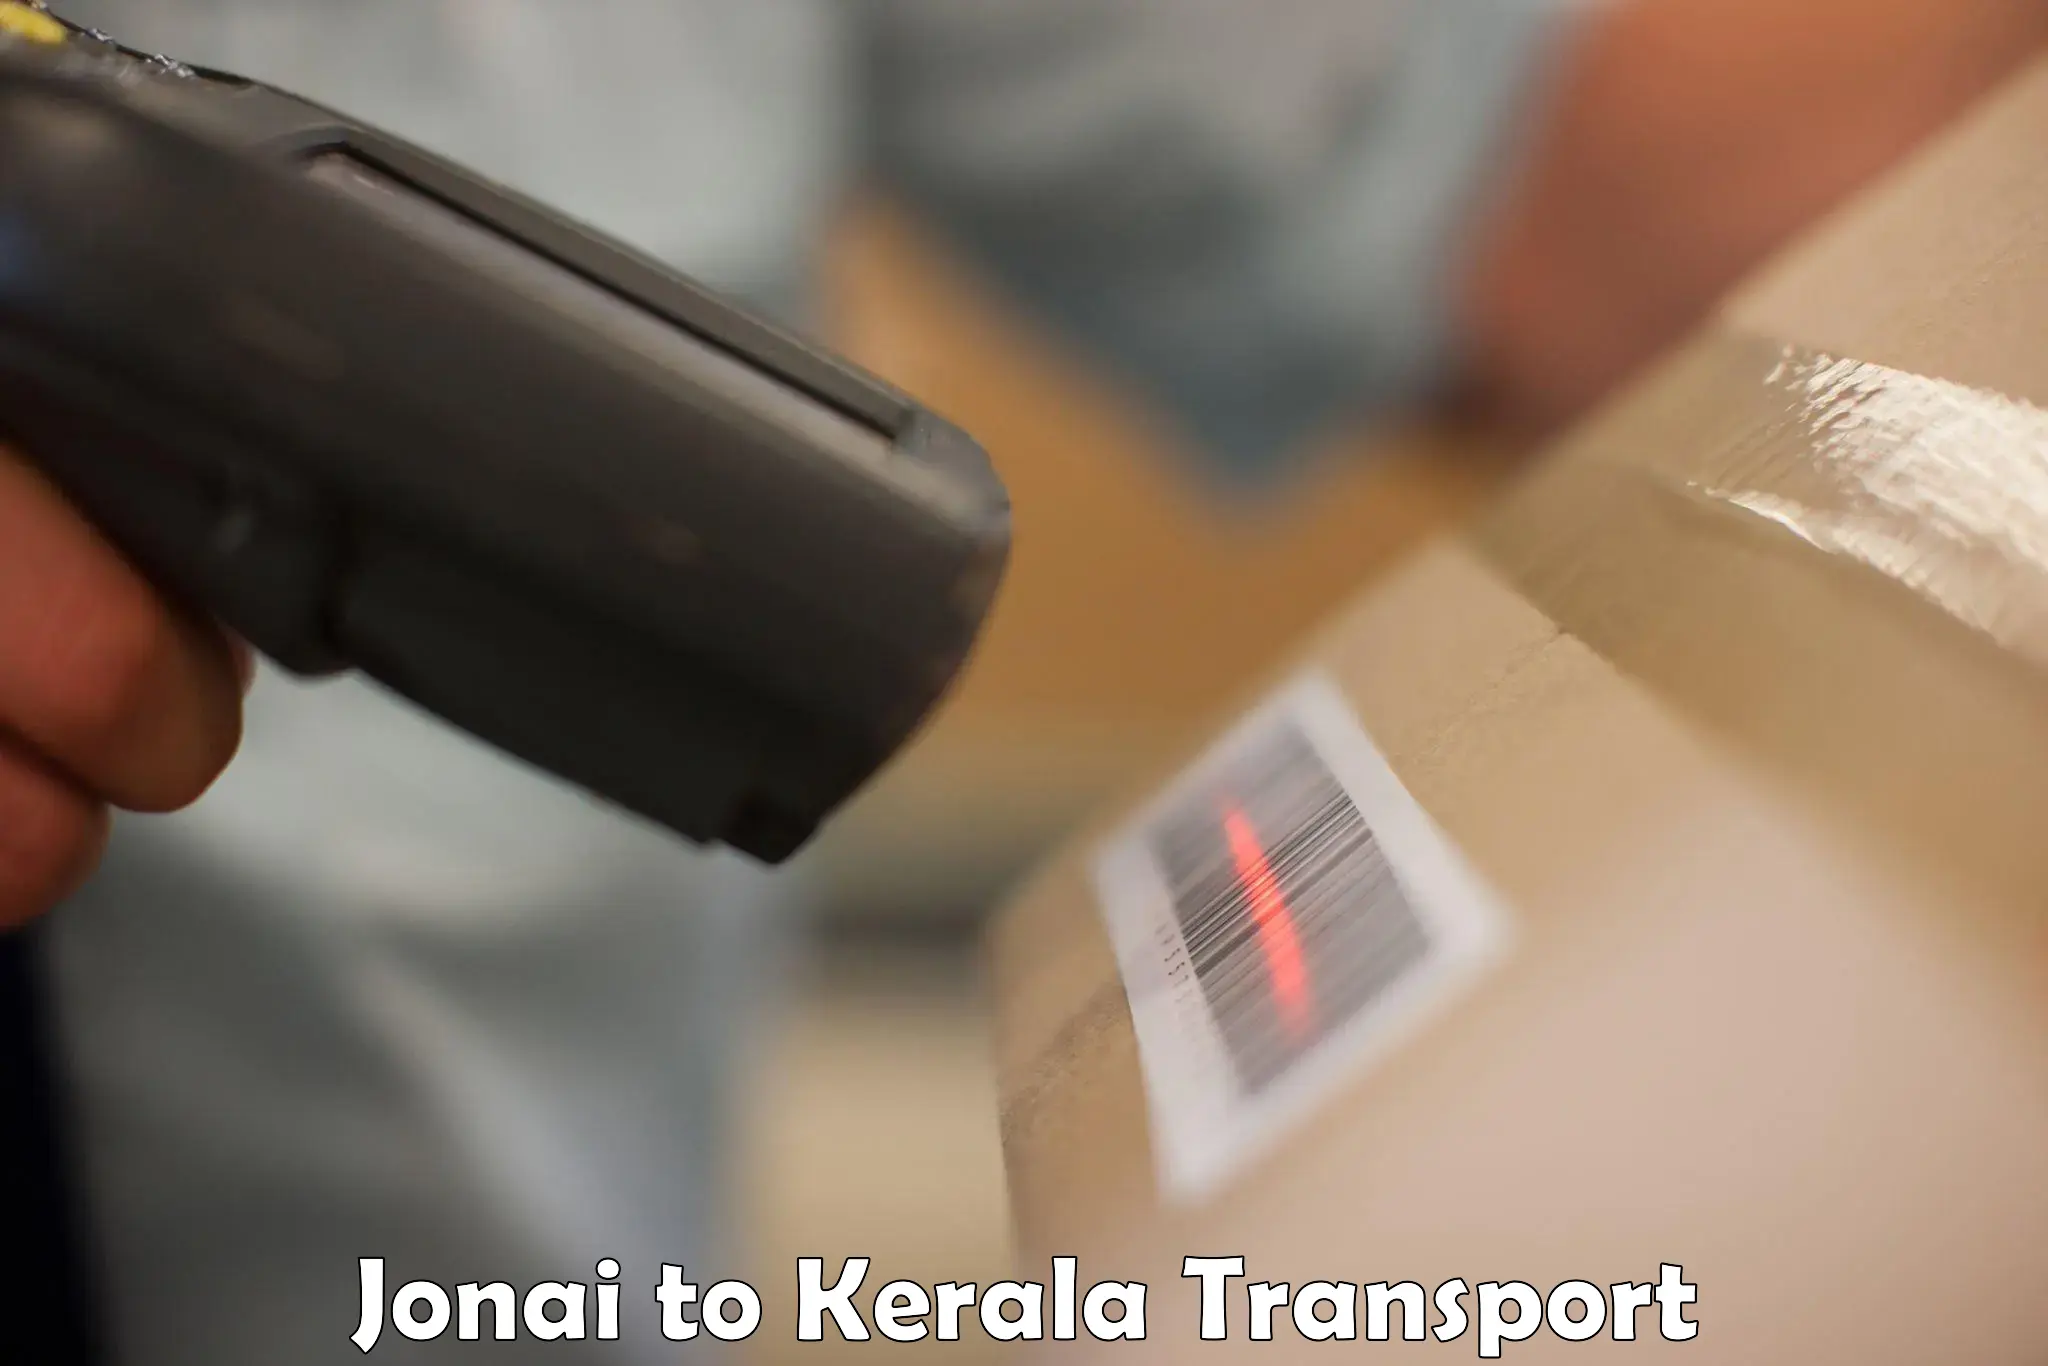 Nearby transport service Jonai to Kottayam